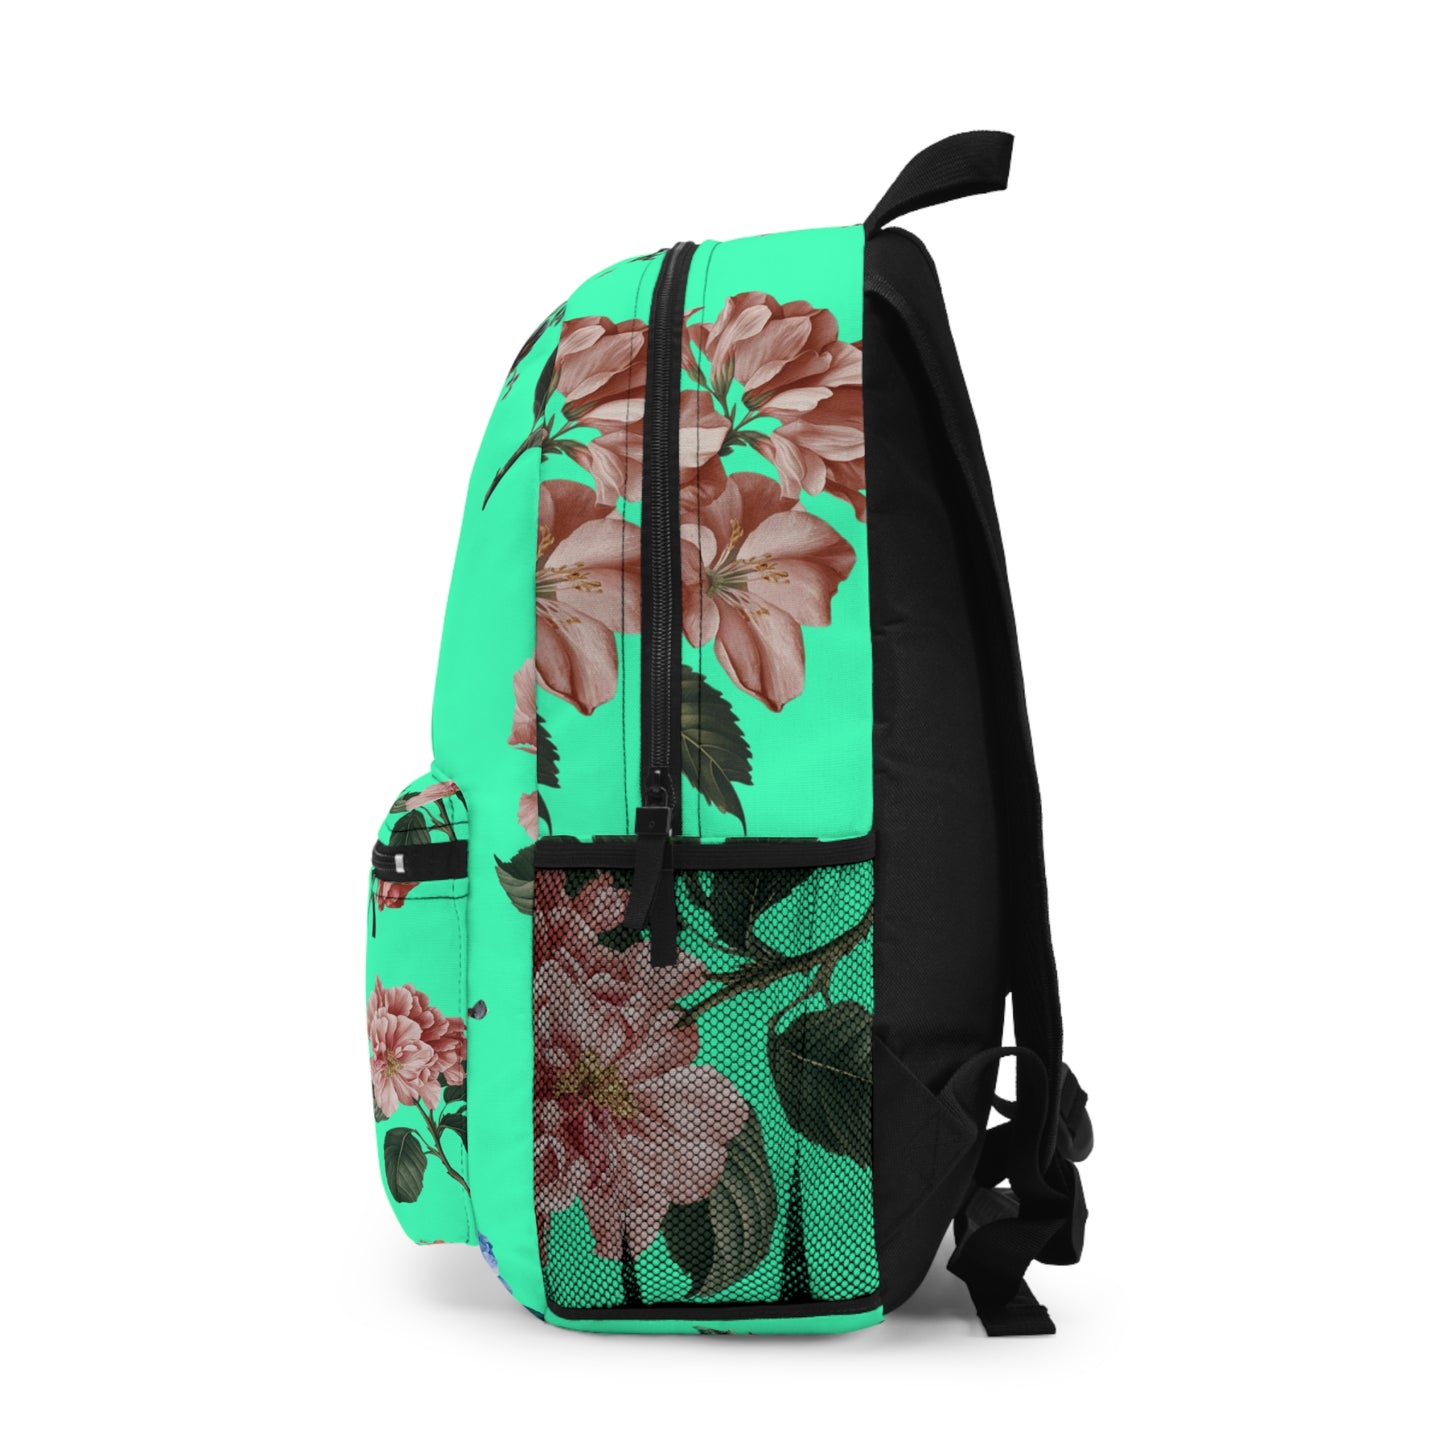 Botanicals on Turquoise - Backpack